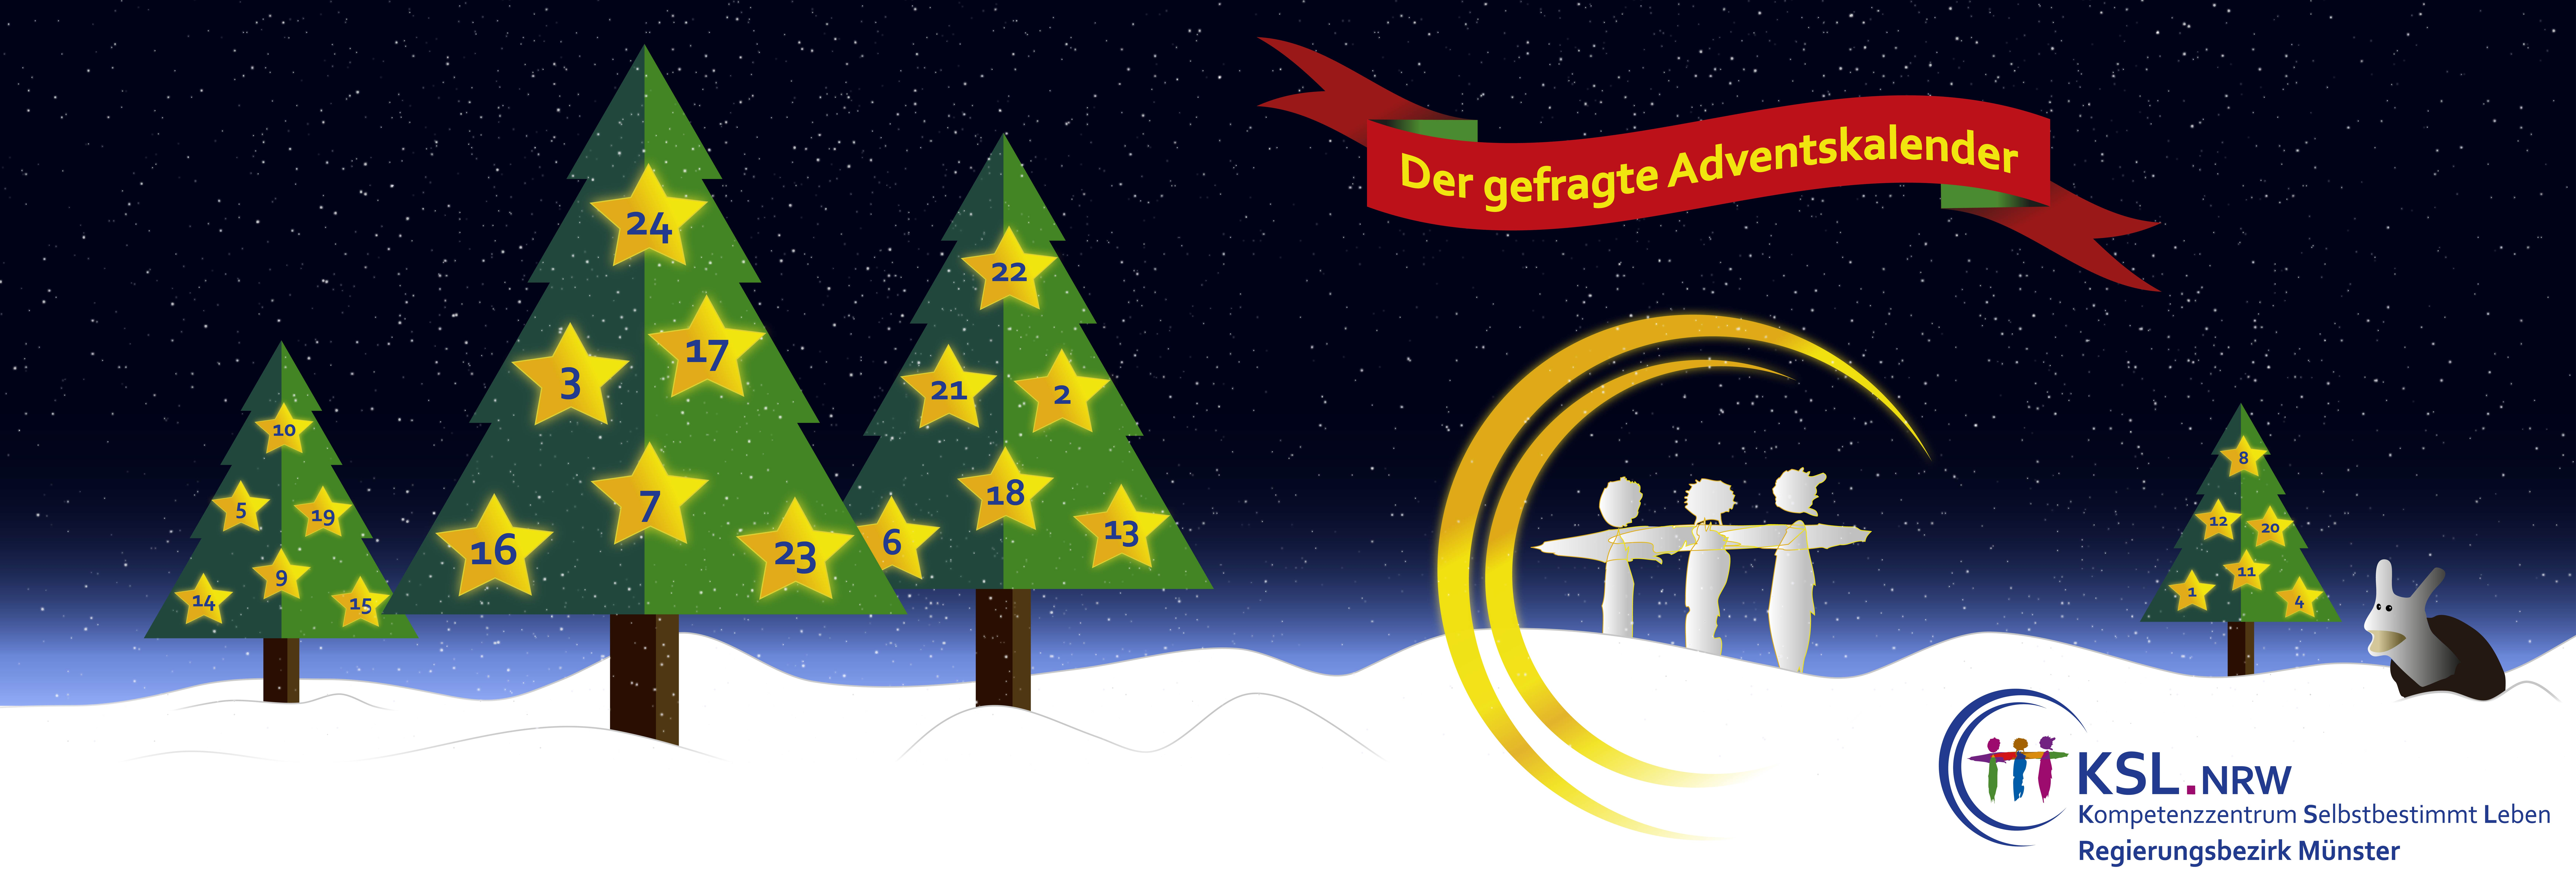 Der gefragte Adventskalaneder - KSL Münster - weihnachtlicher Hintergrund mit 3 Tannenbäumen mit 24 Sternen 